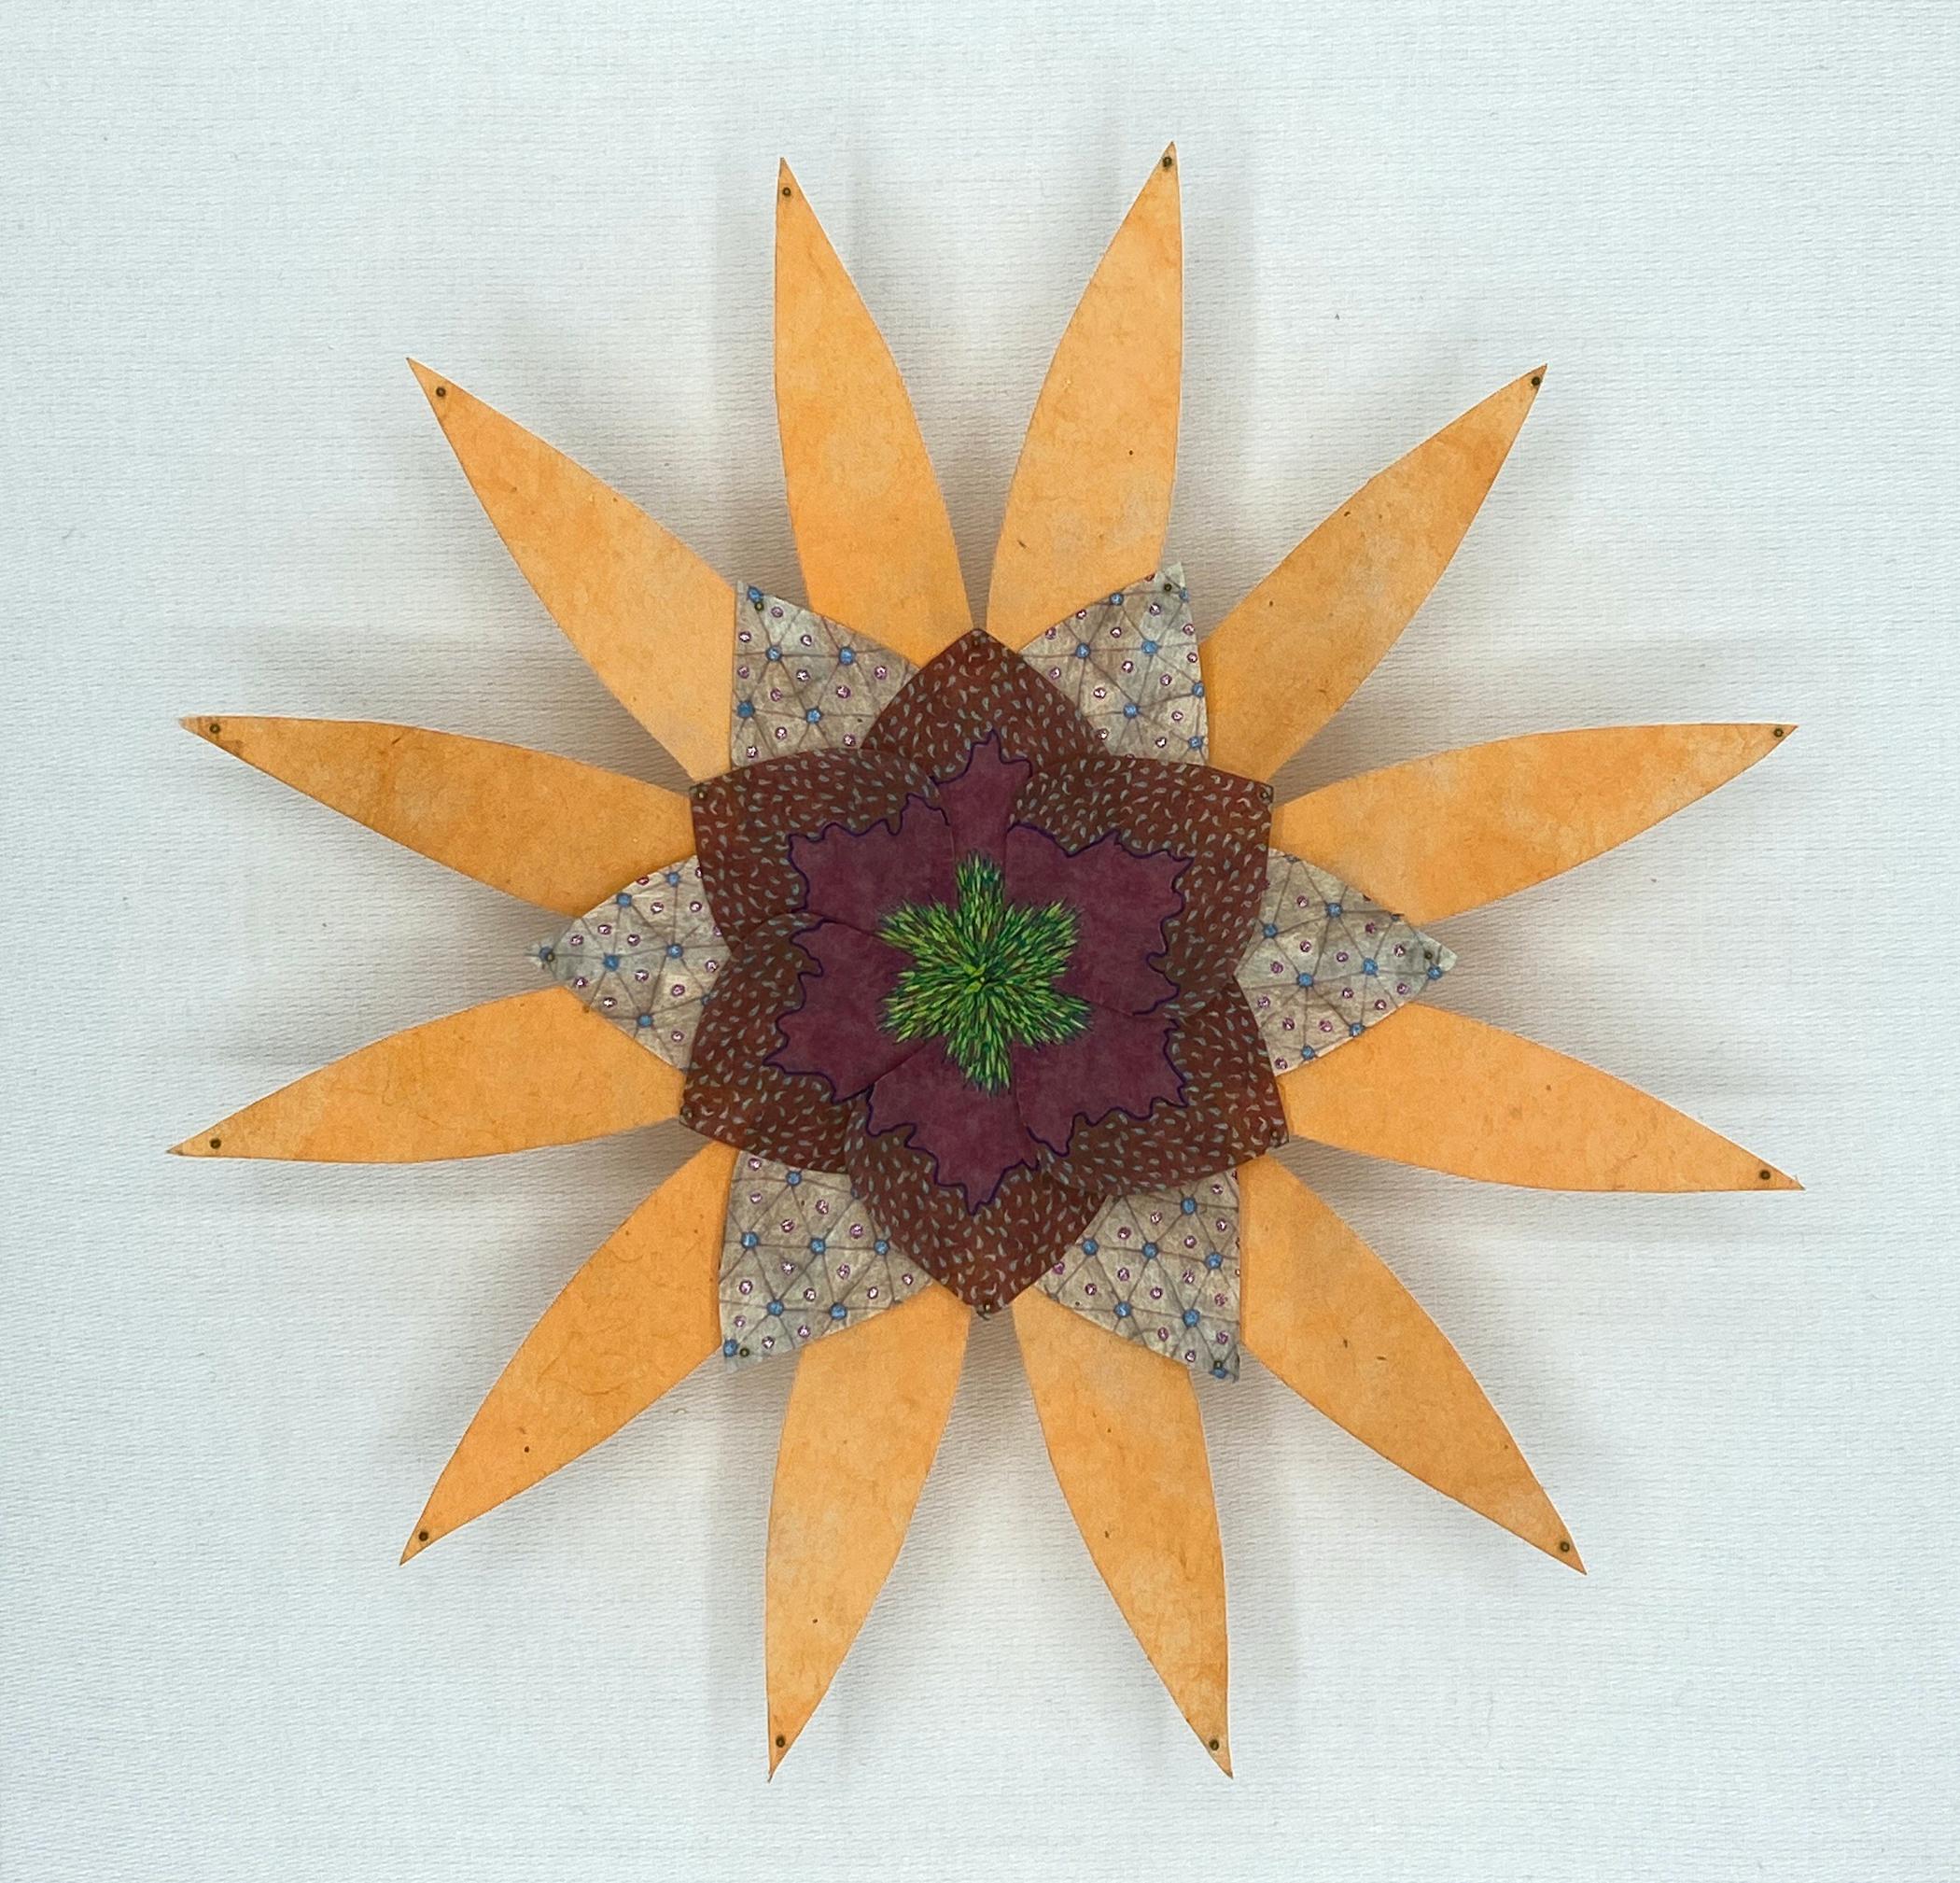 Abstract Sculpture Jill Parisi - Sculpture murale en papier botanique coloré, étoile de terre et de ciel, orange clair